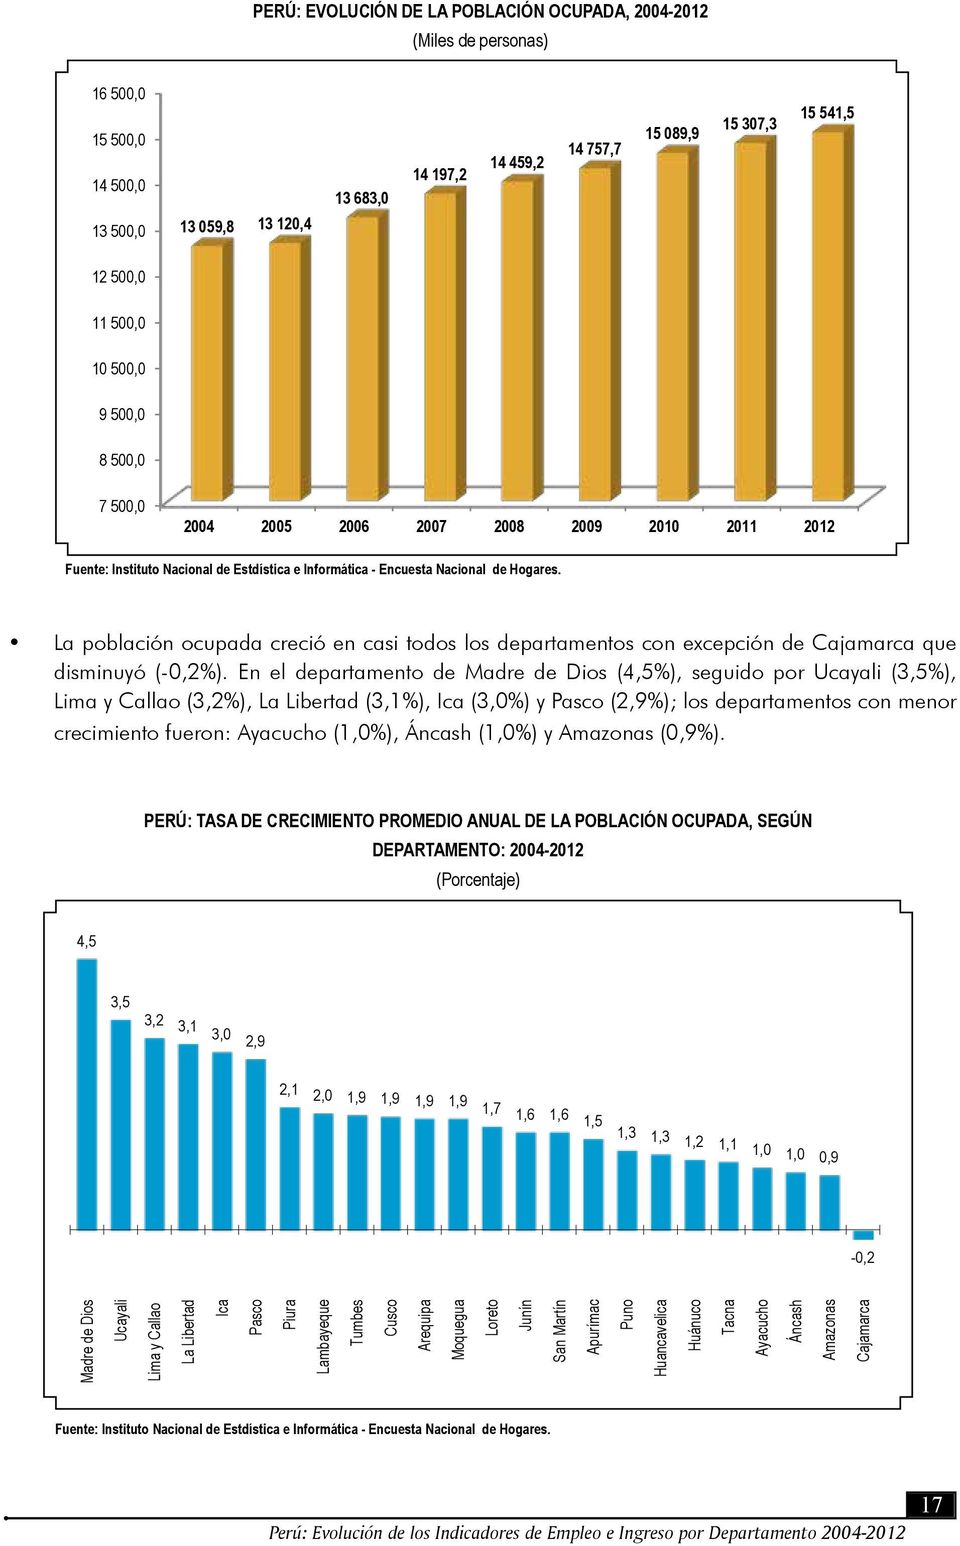 La población ocupada creció en casi todos los departamentos con excepción de Cajamarca que disminuyó (-0,2%).